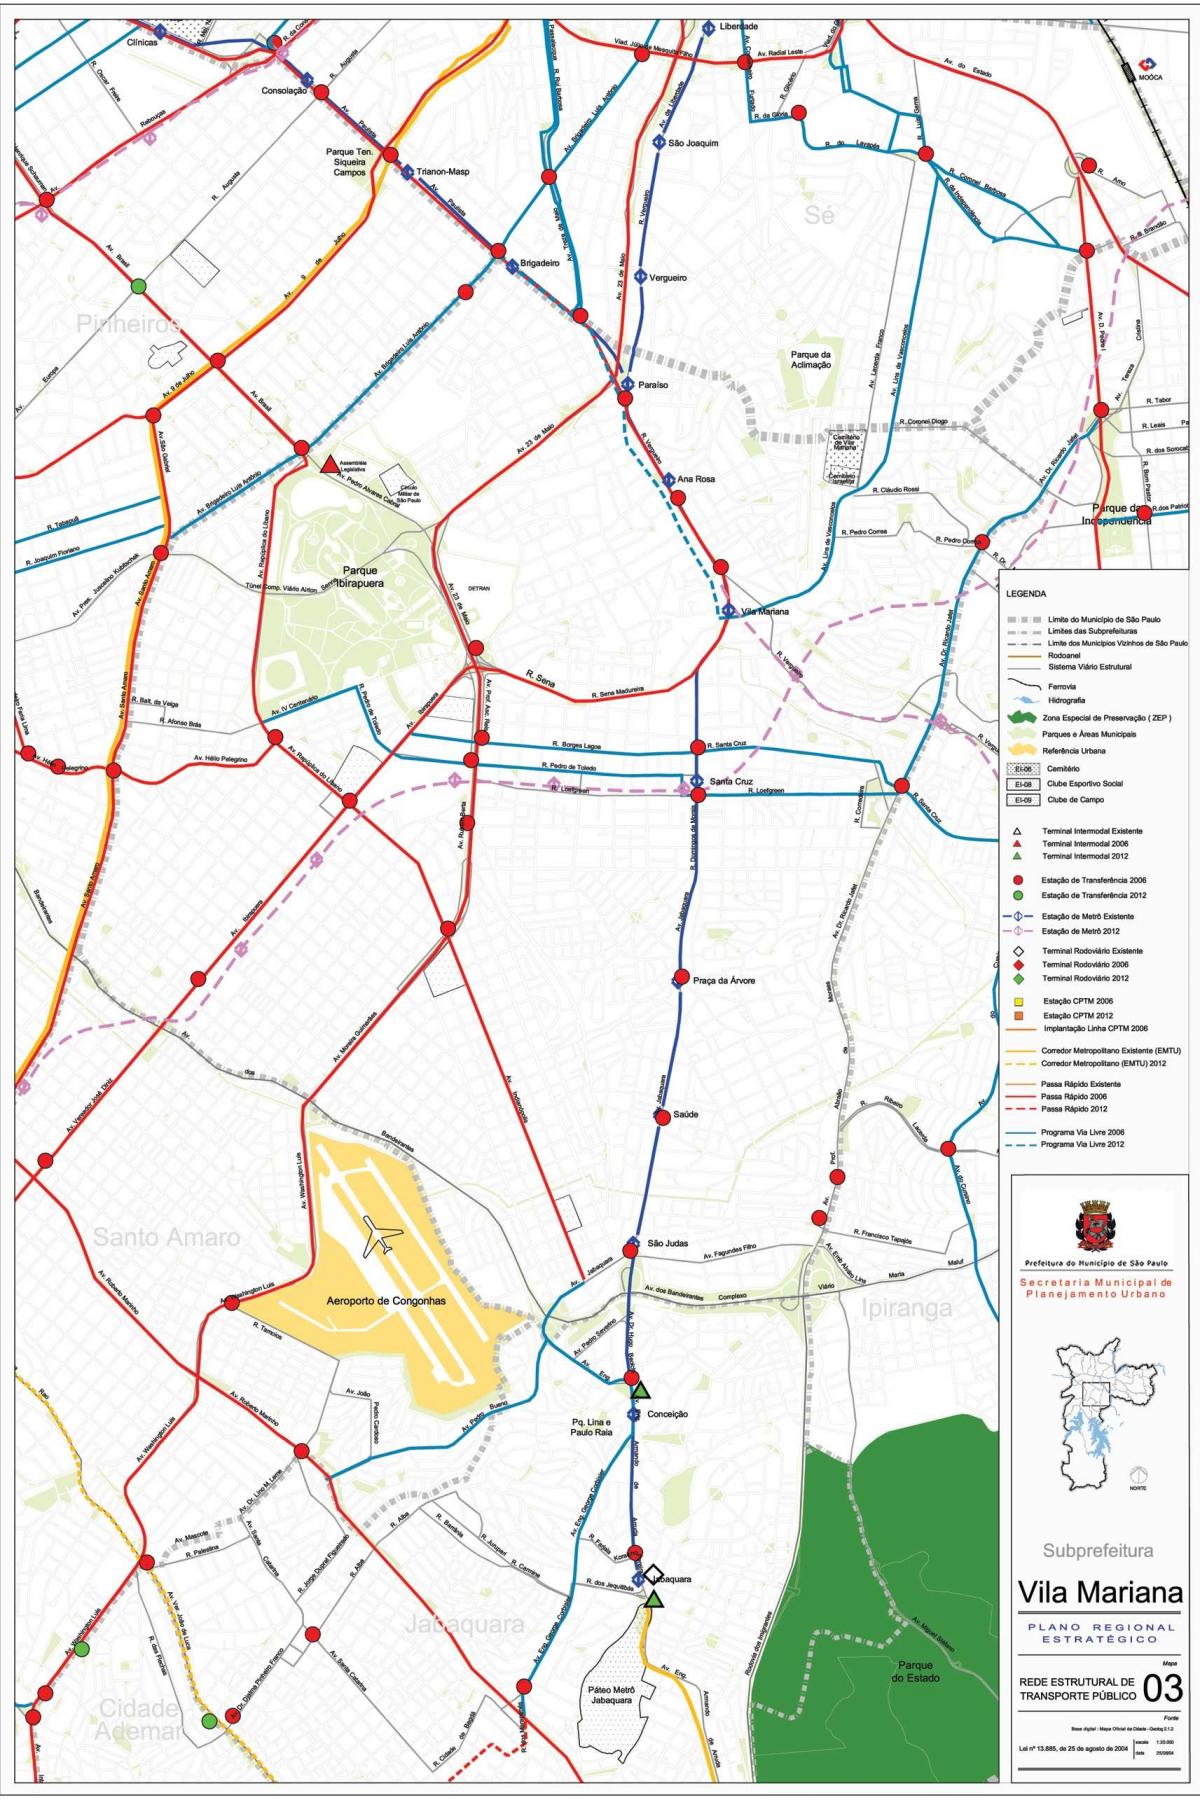 Kaart van Vila Mariana São Paulo - het Openbaar vervoer